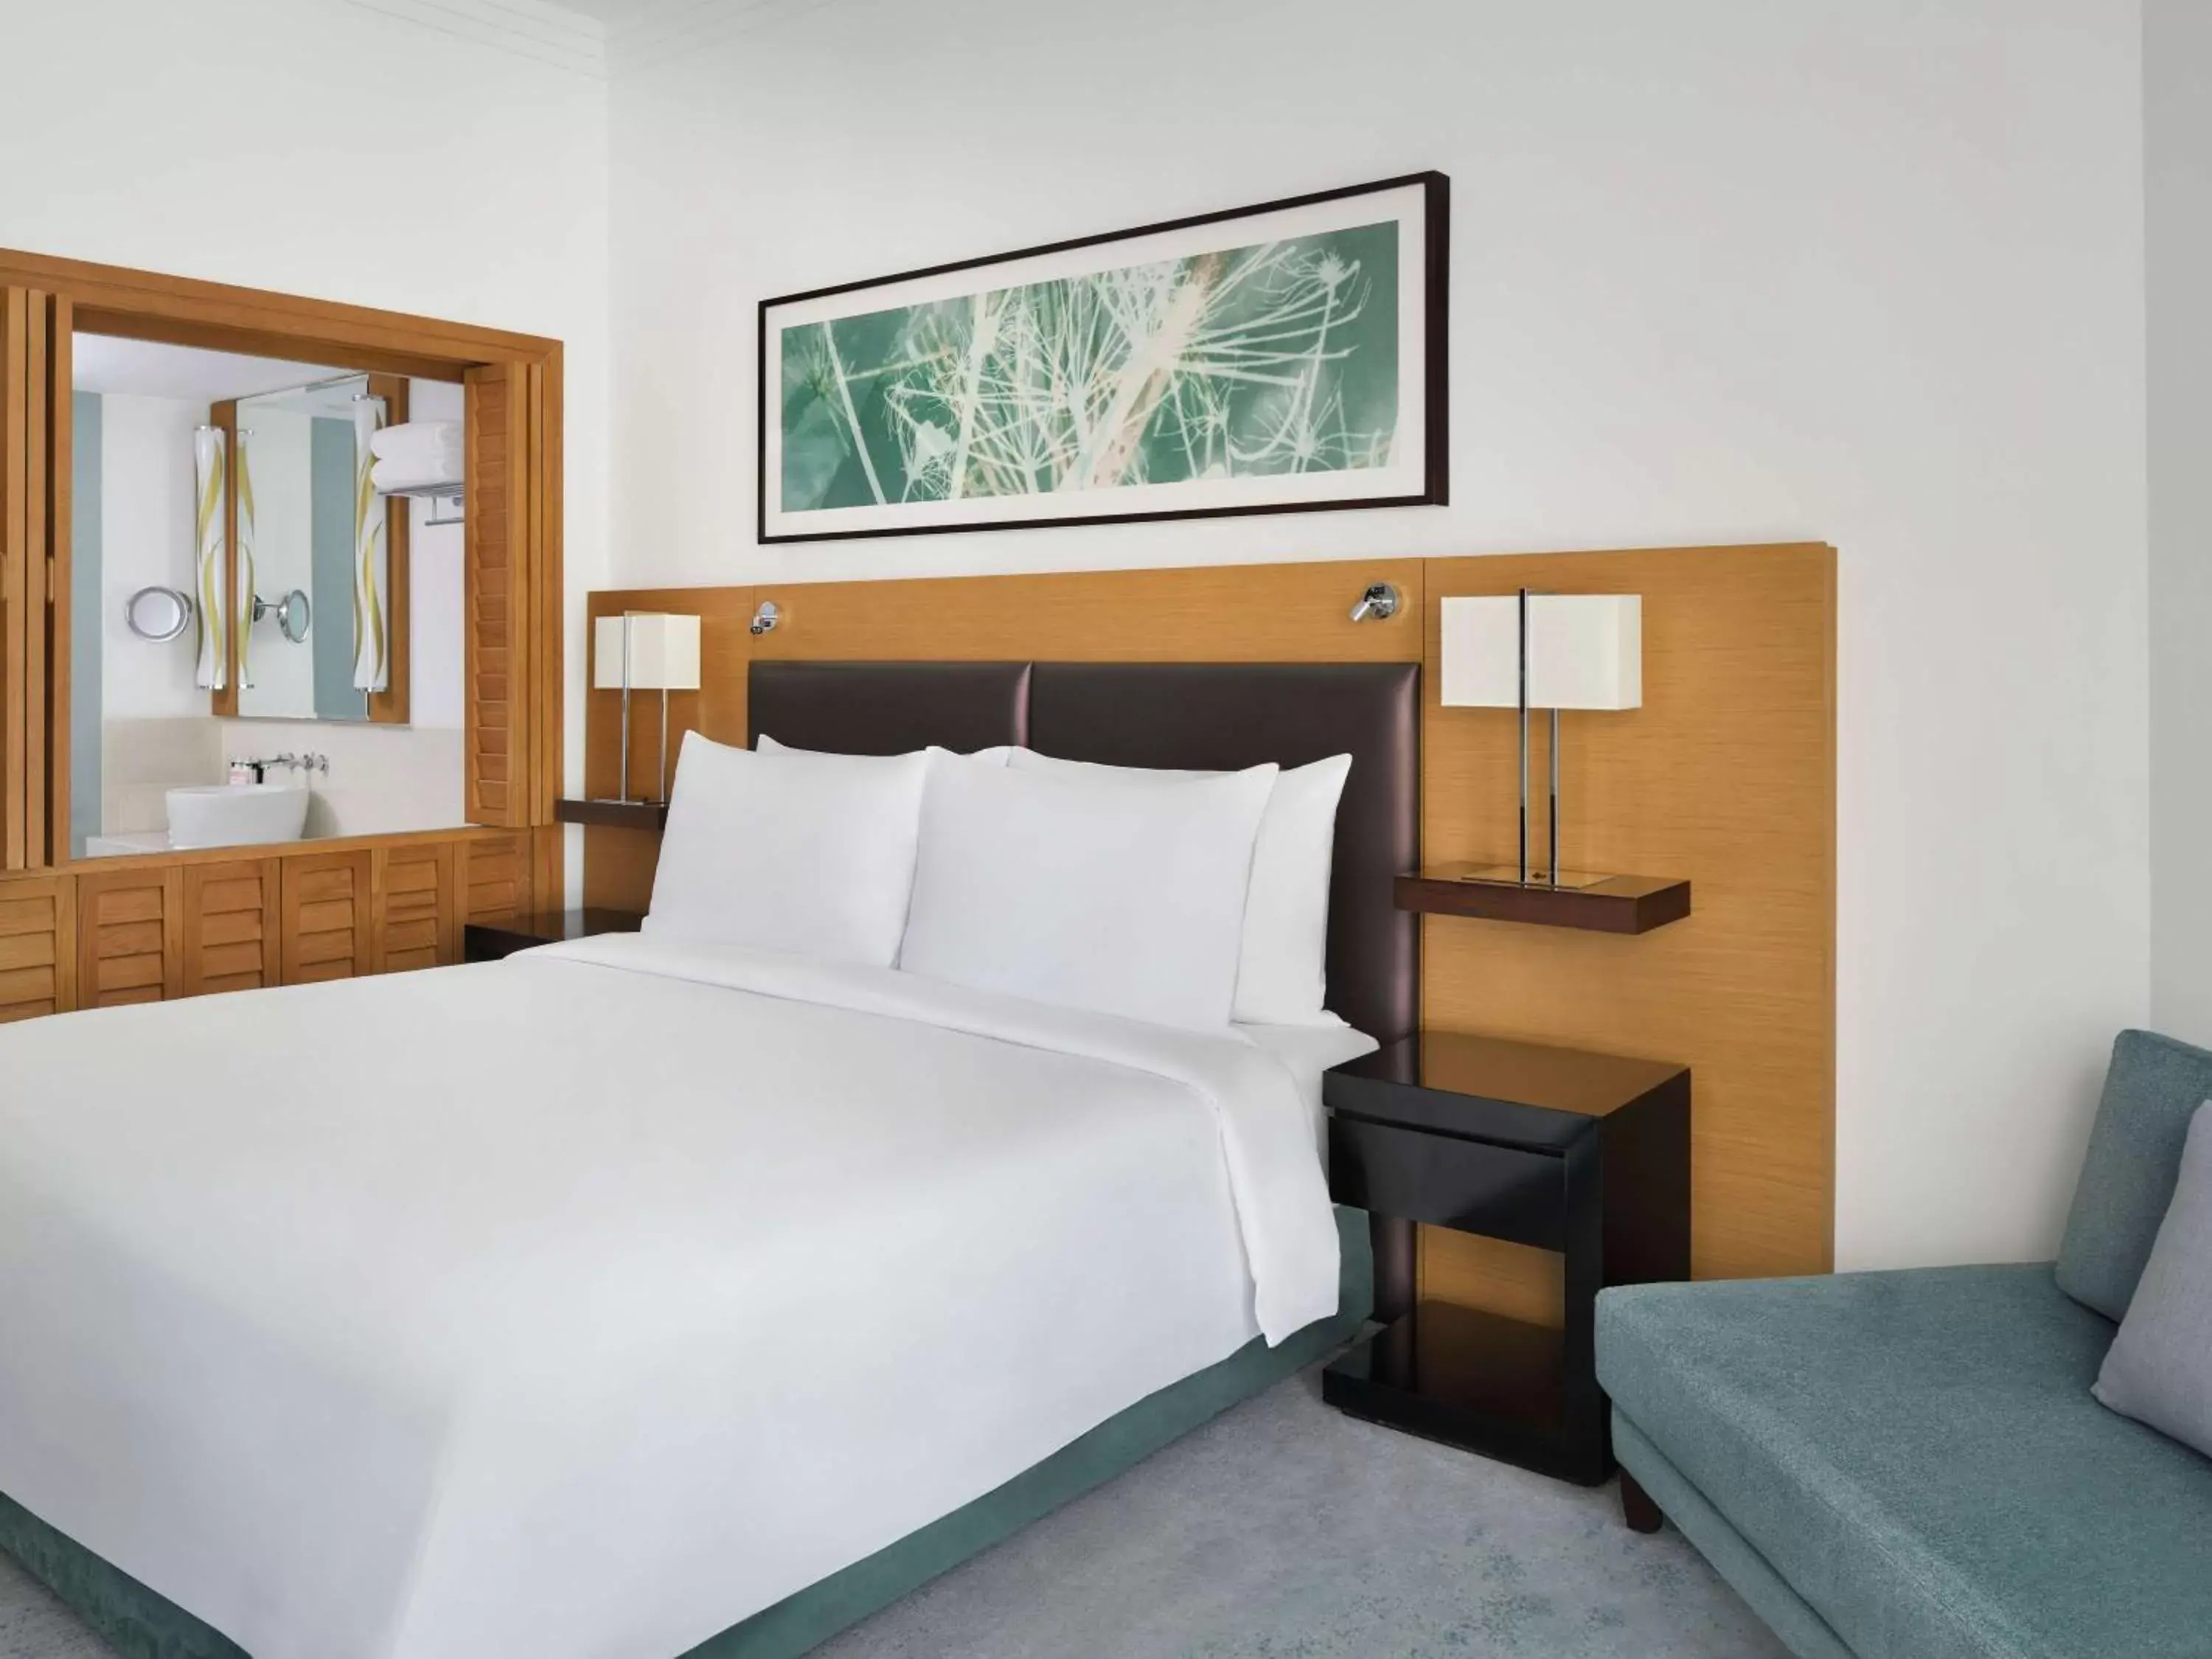 Bedroom, Bed in Mövenpick Hotel Jumeirah Beach